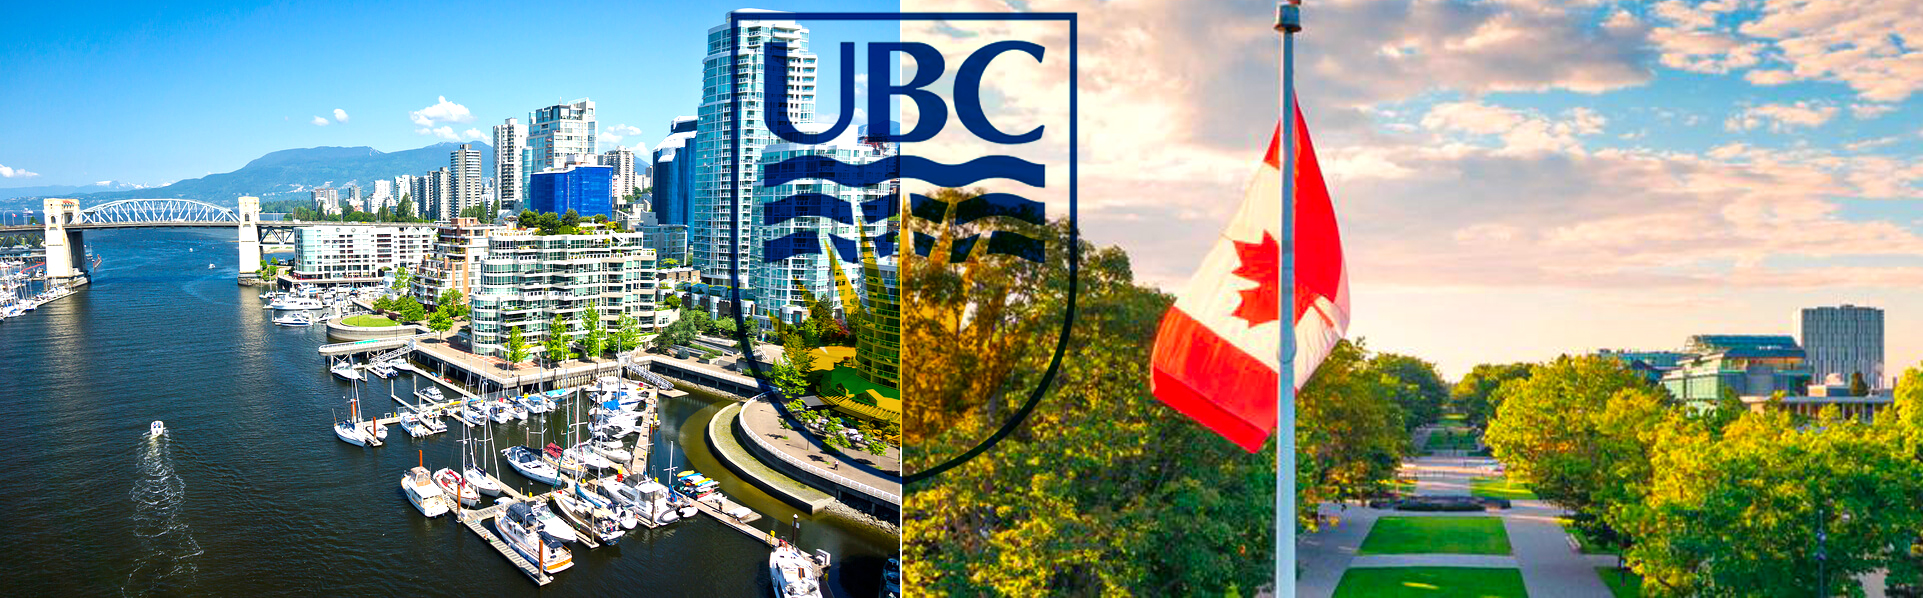 ubc-vancouver-campus-iep